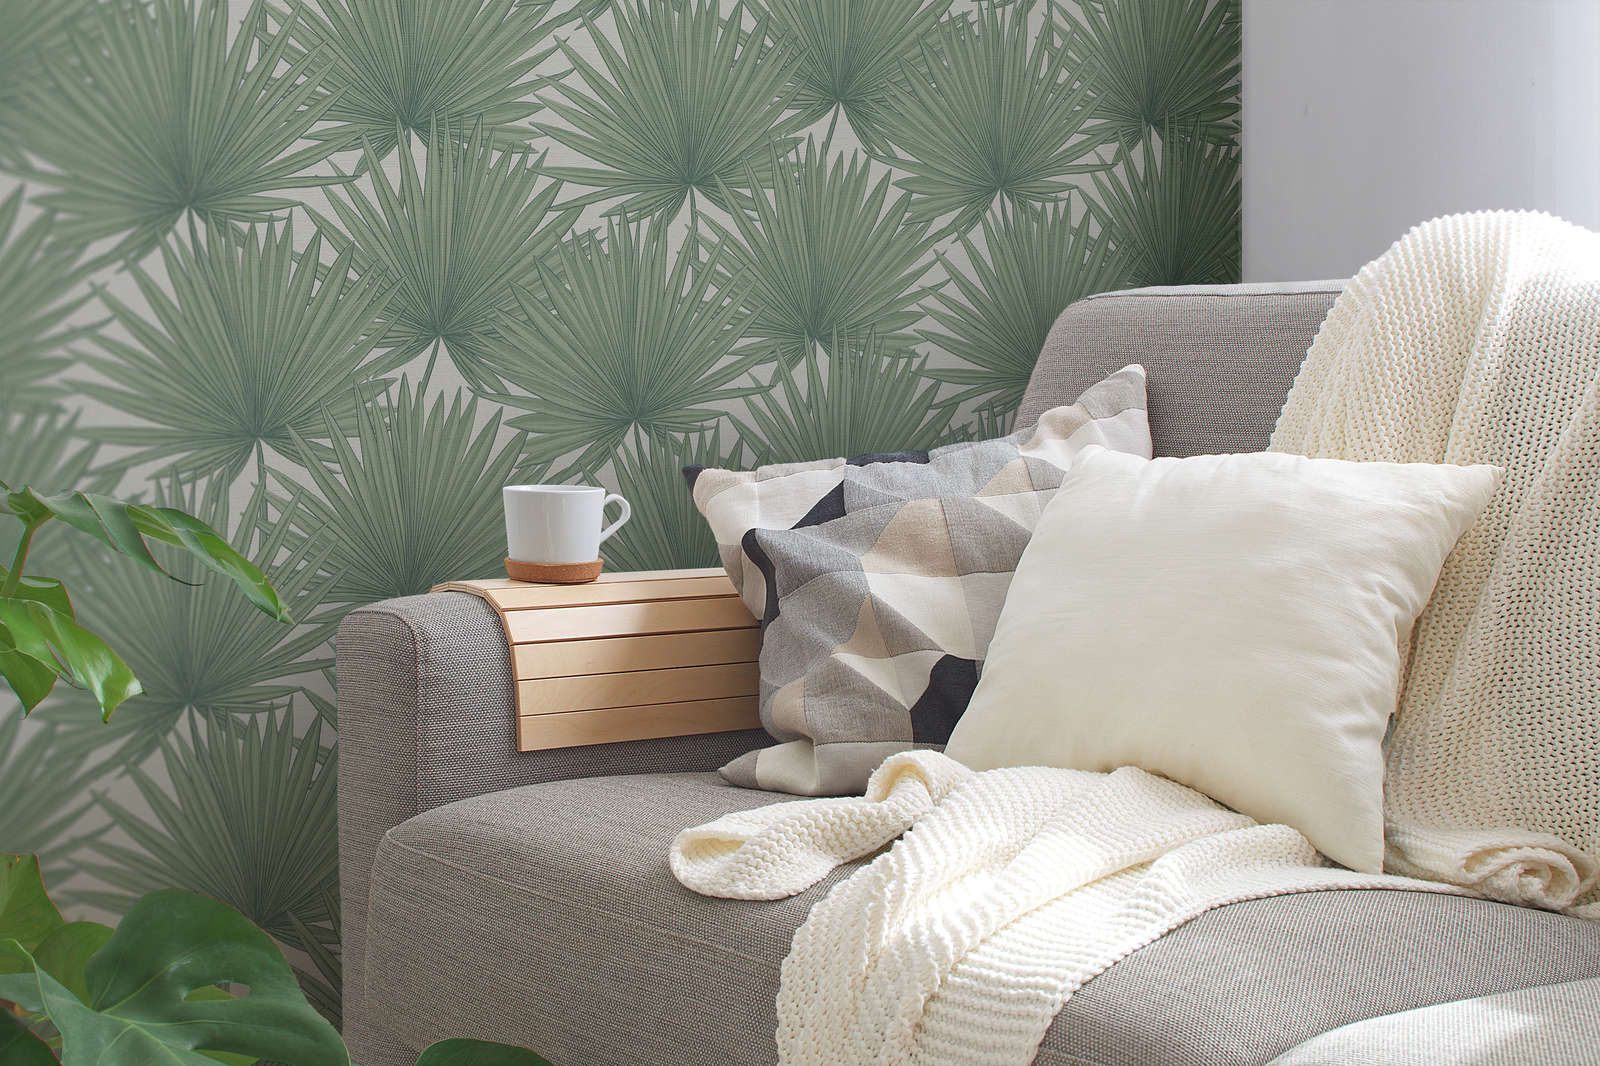             Jungle style non-woven wallpaper - green, white
        